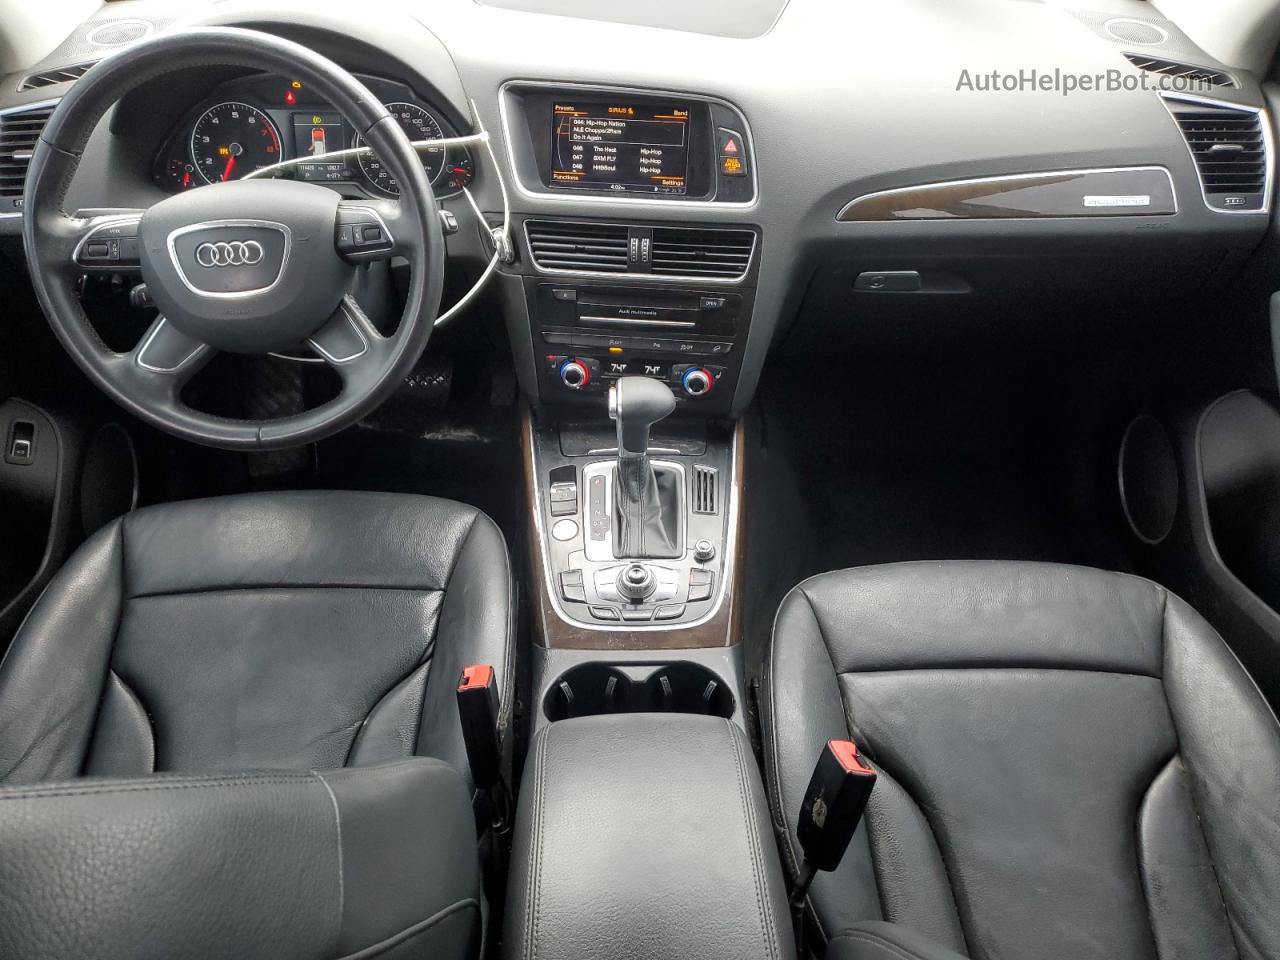 2014 Audi Q5 Premium Plus Black vin: WA1DGAFP4EA070233